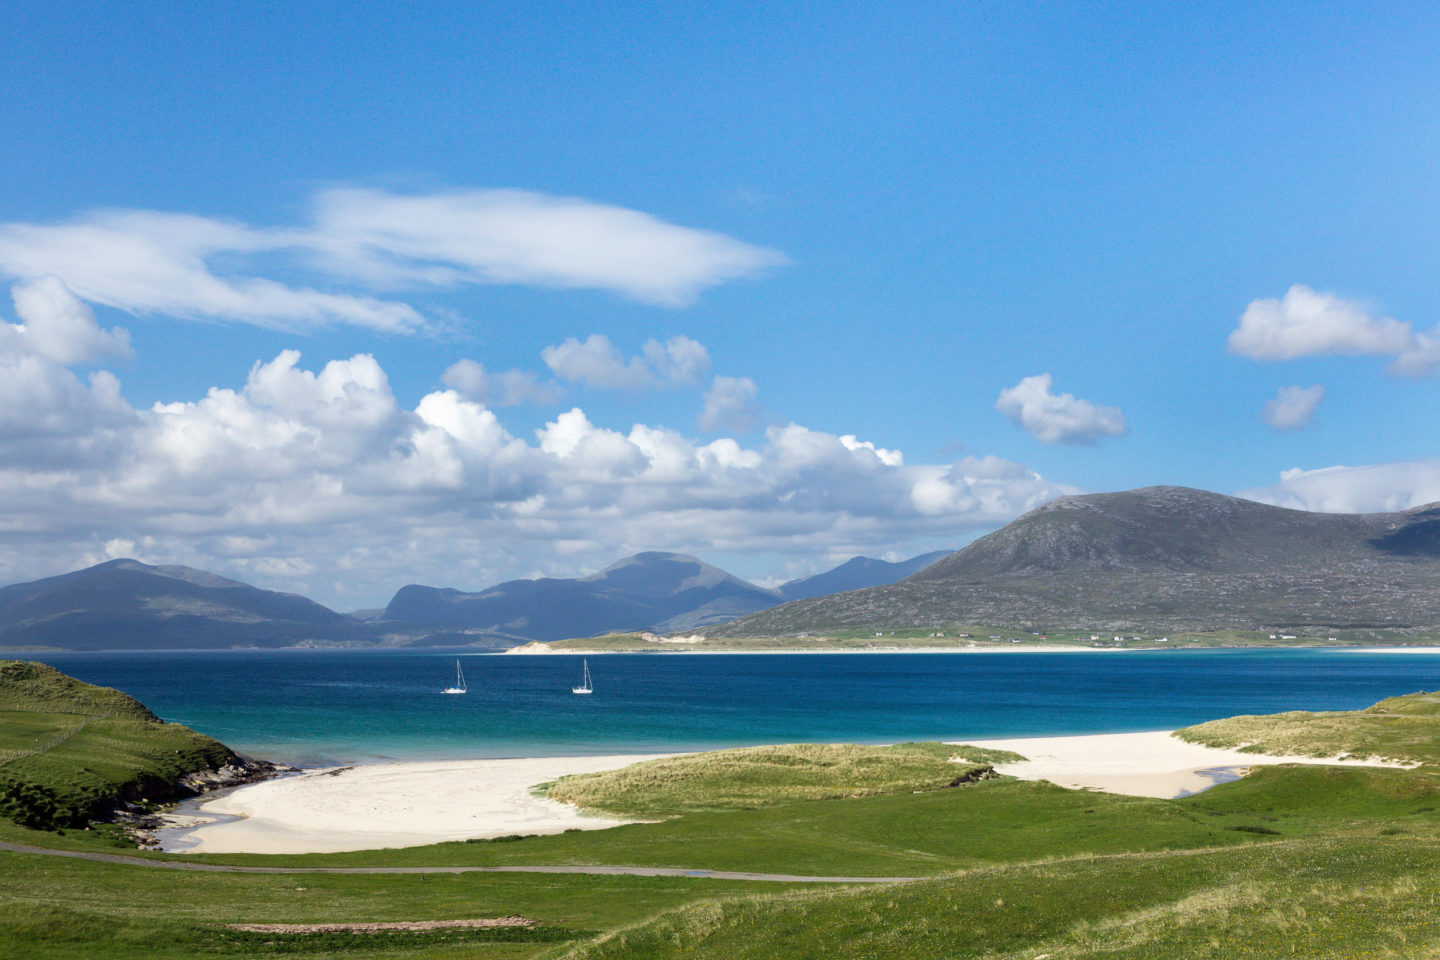 beauty spots in Scotland - the isle of Harris